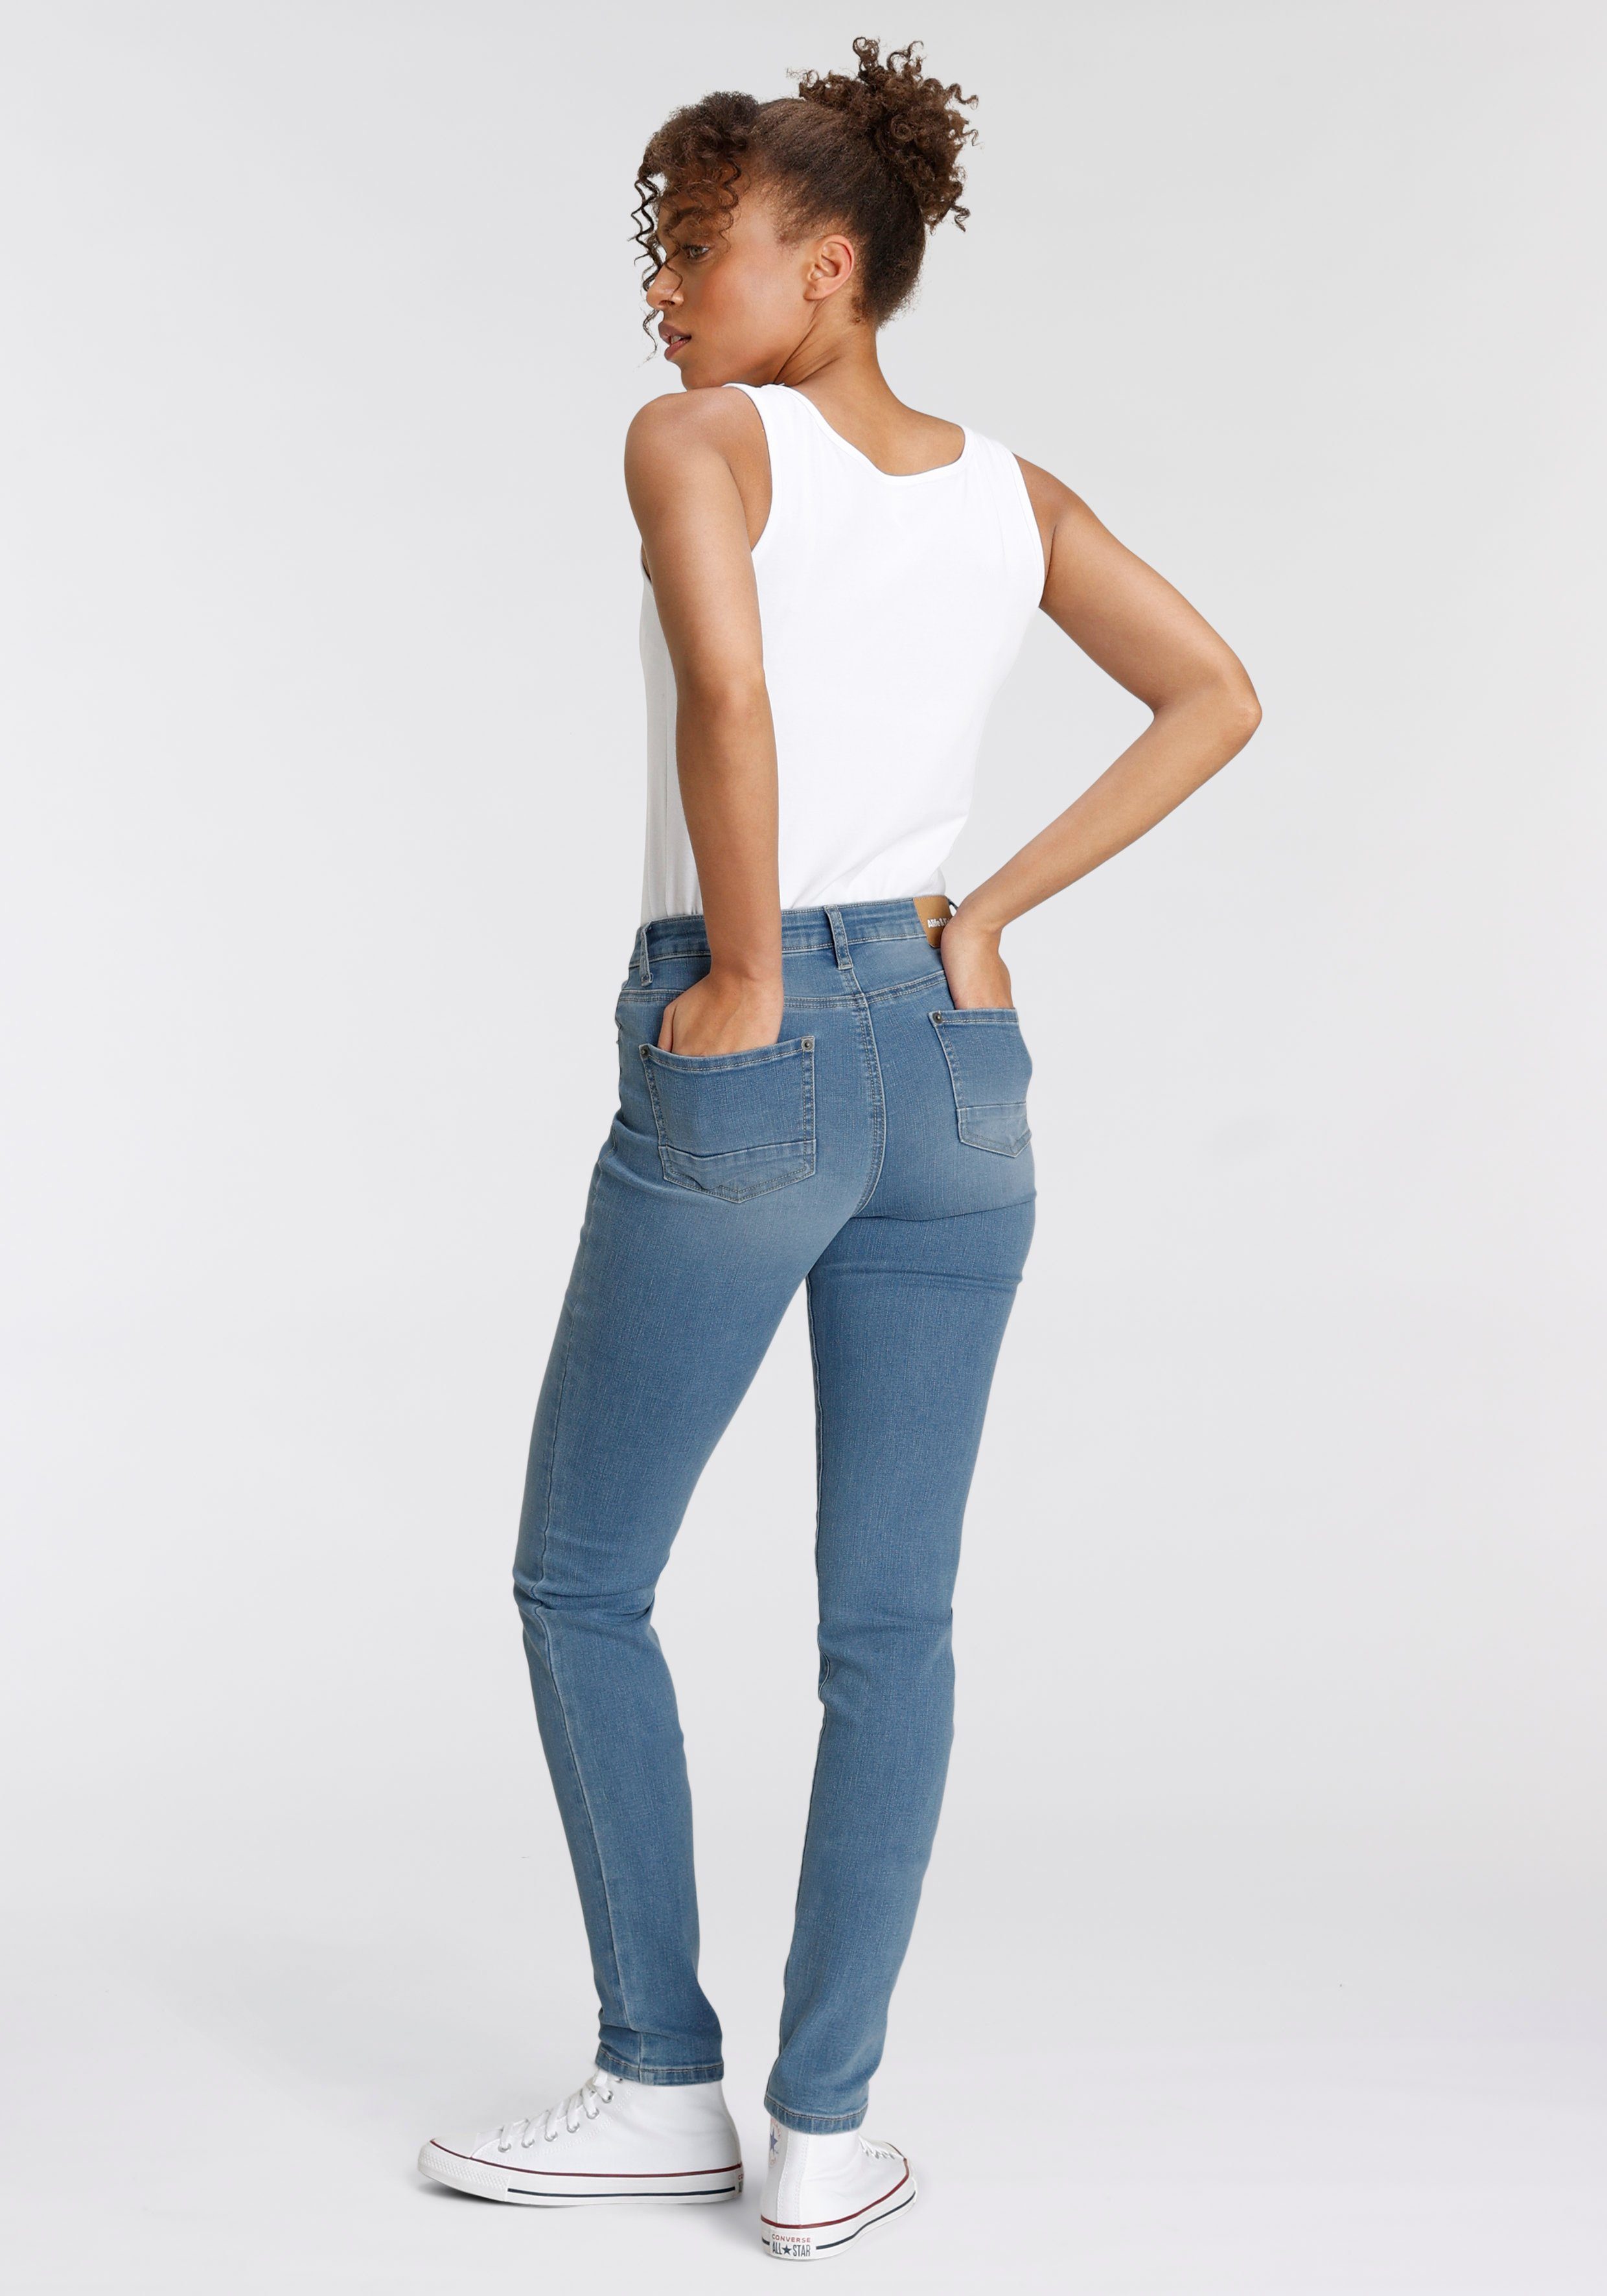 Alife & Kickin High-waist-Jeans Slim-Fit KOLLEKTION NEUE used blue NolaAK